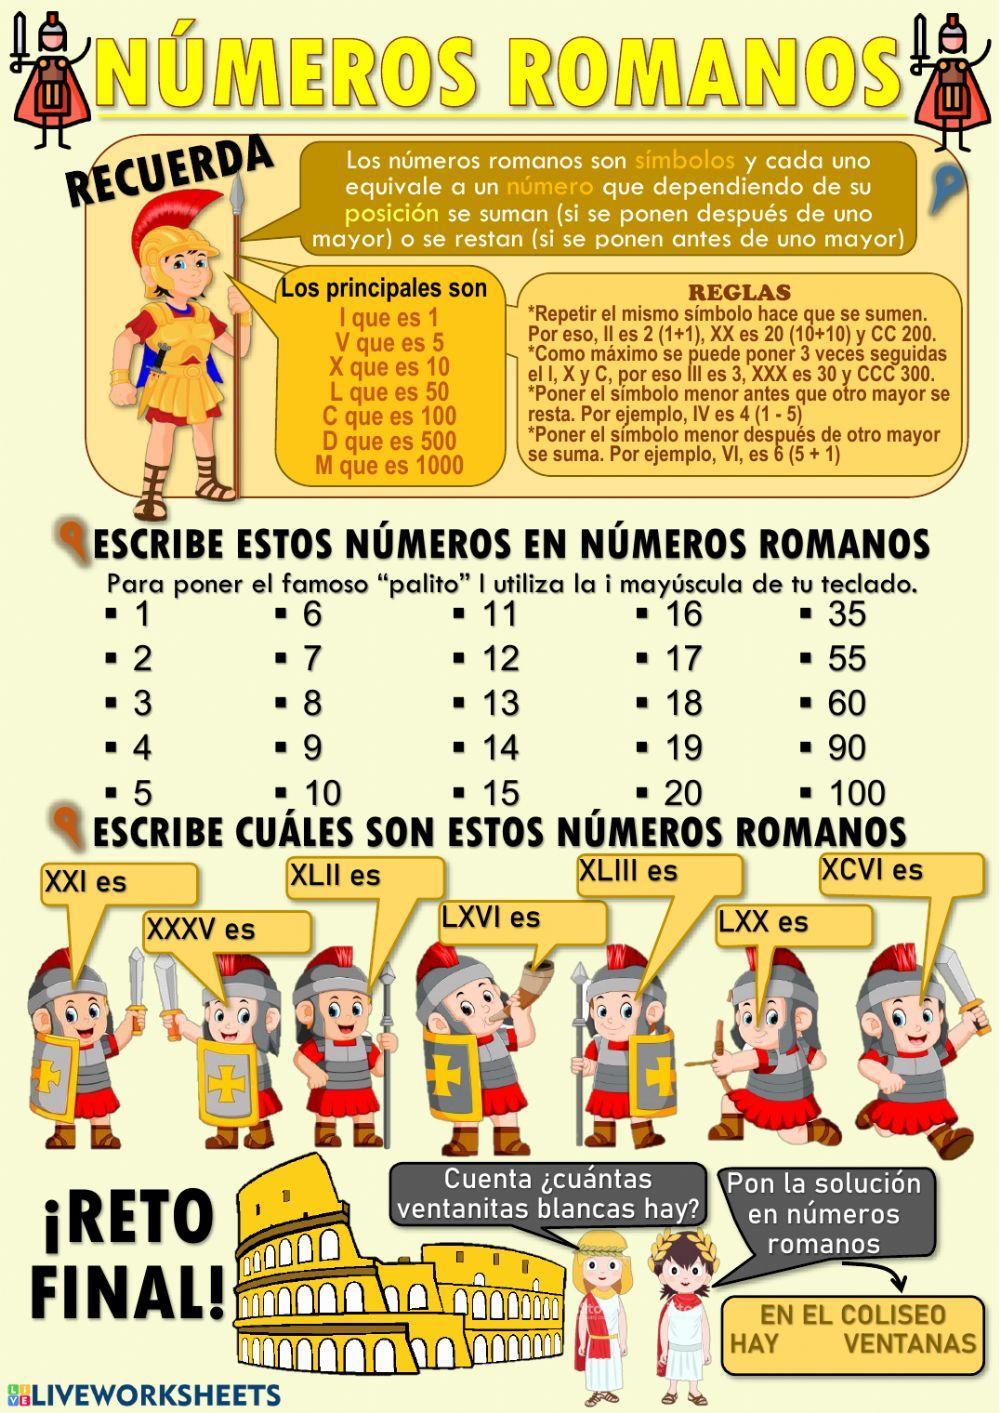 Los números romanos del 0 al 100